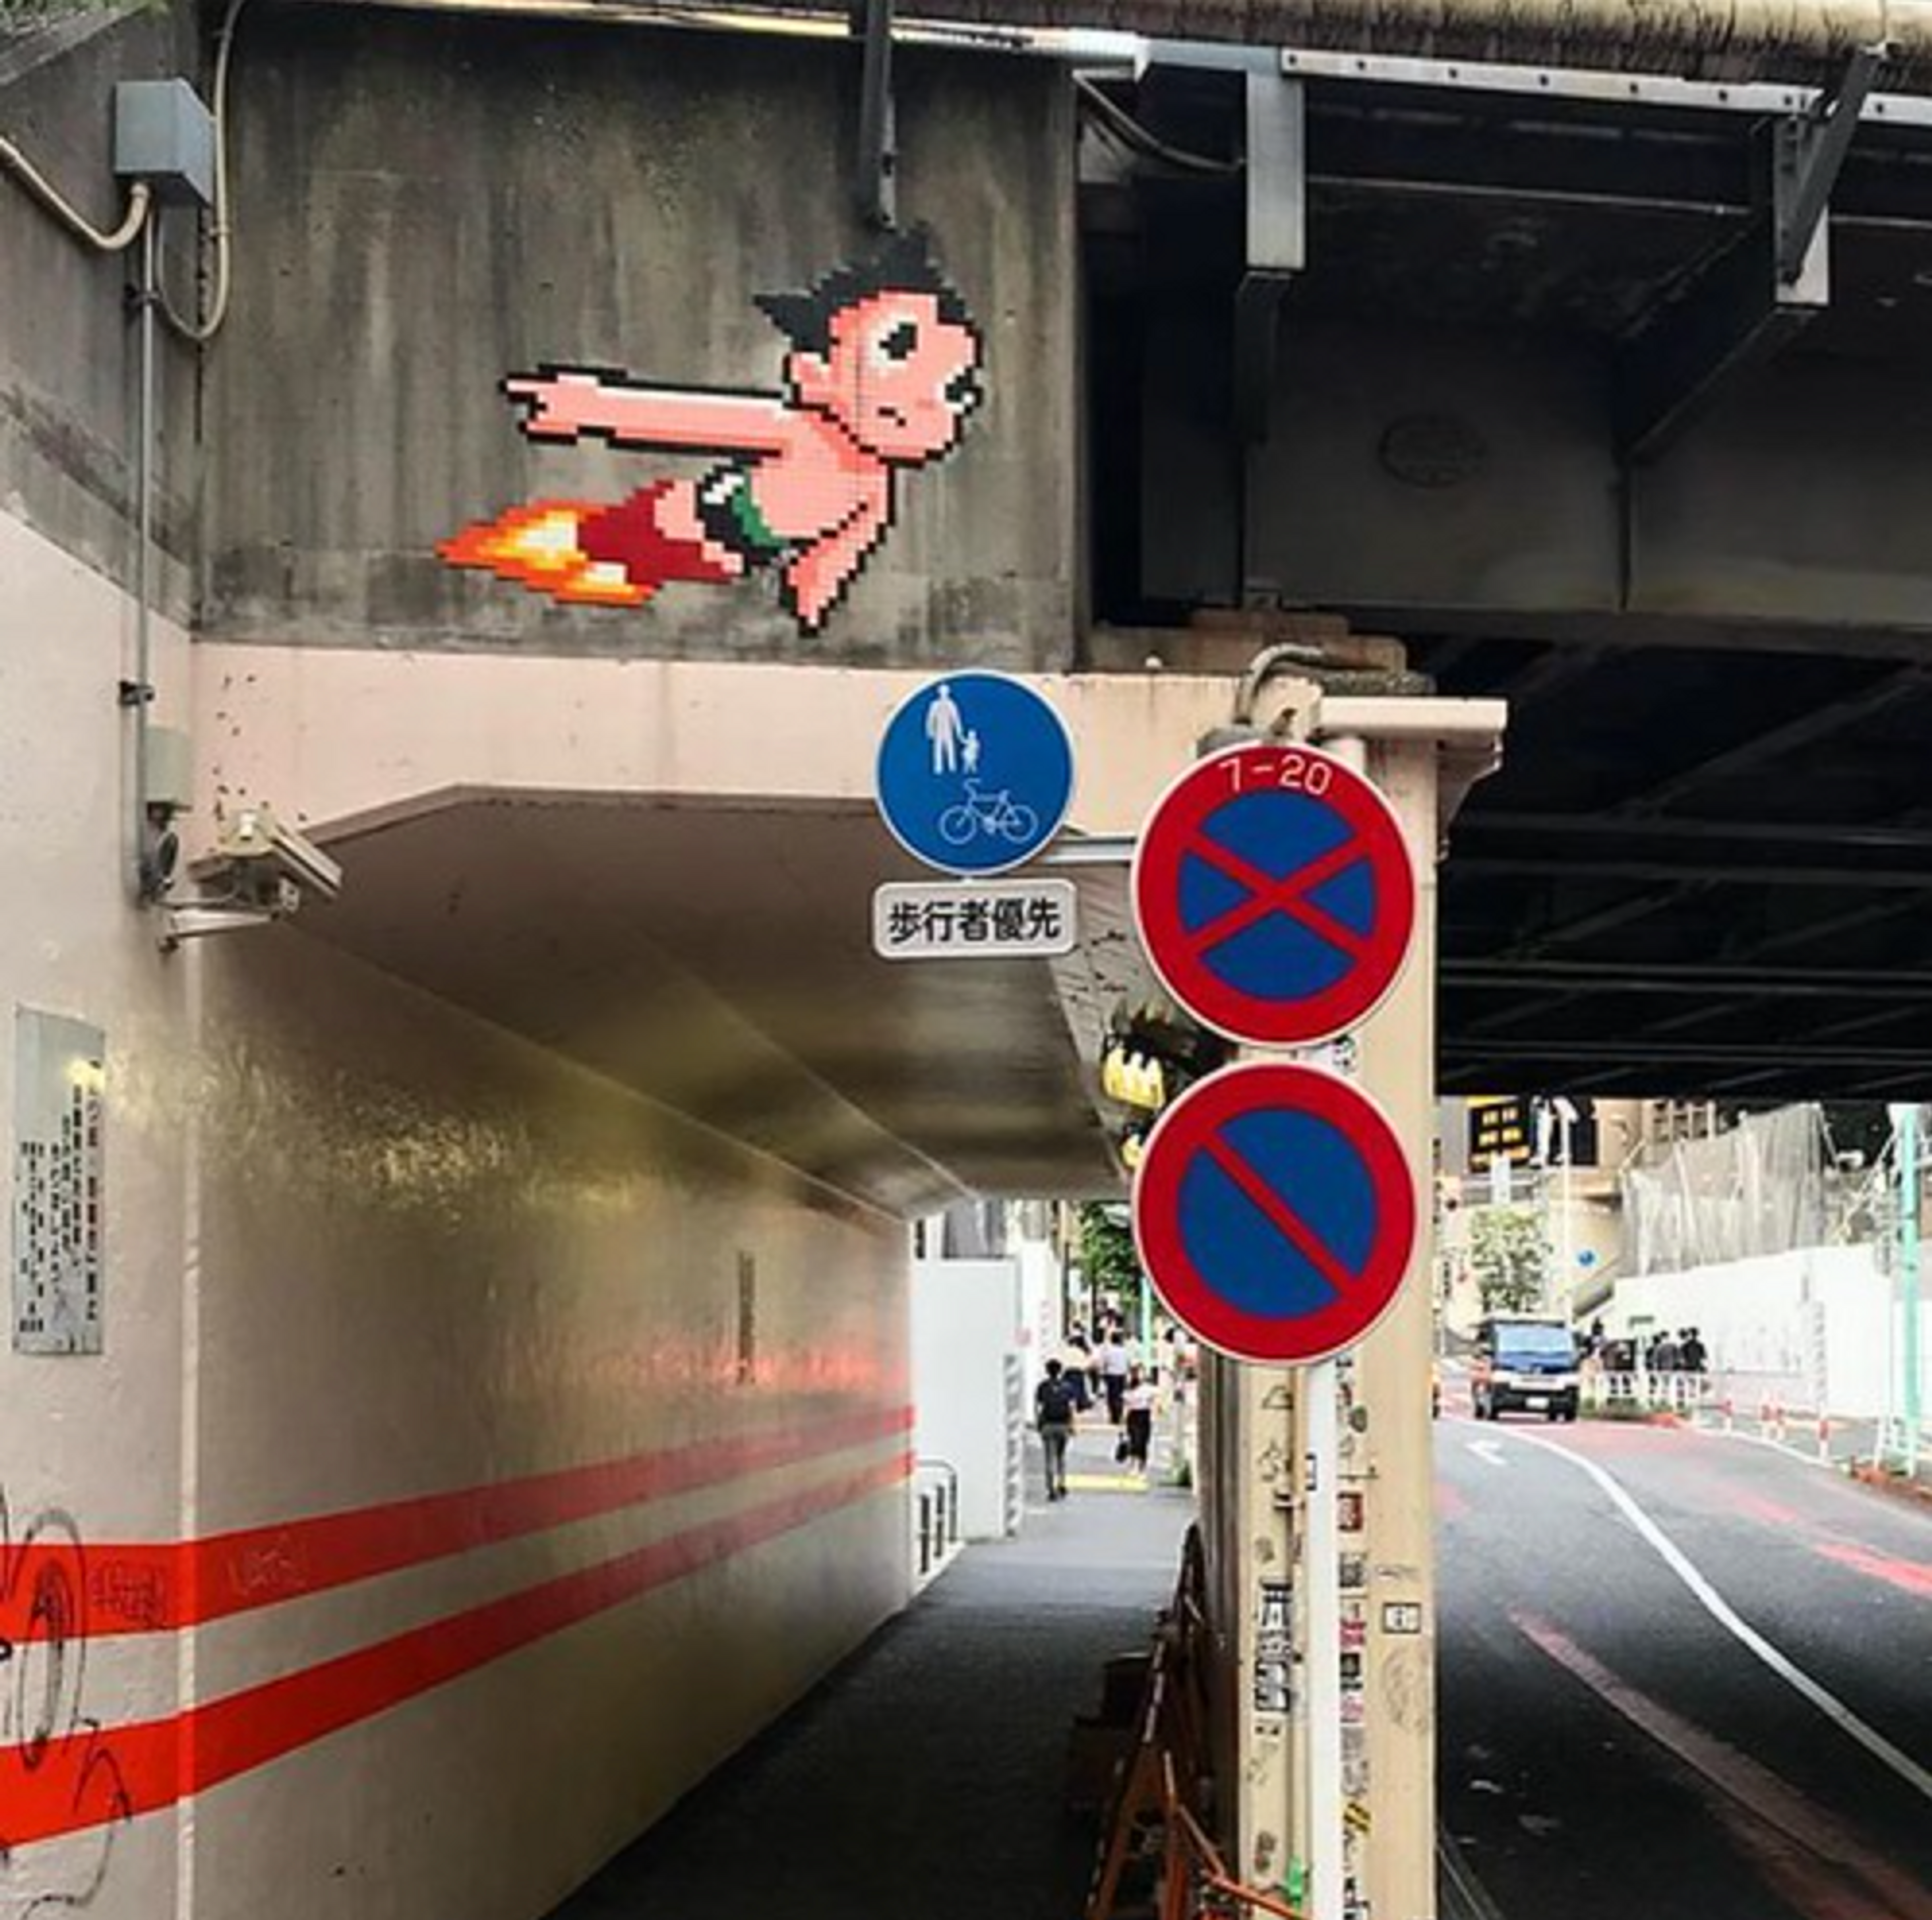 Astroboy, Tokyo by Invader